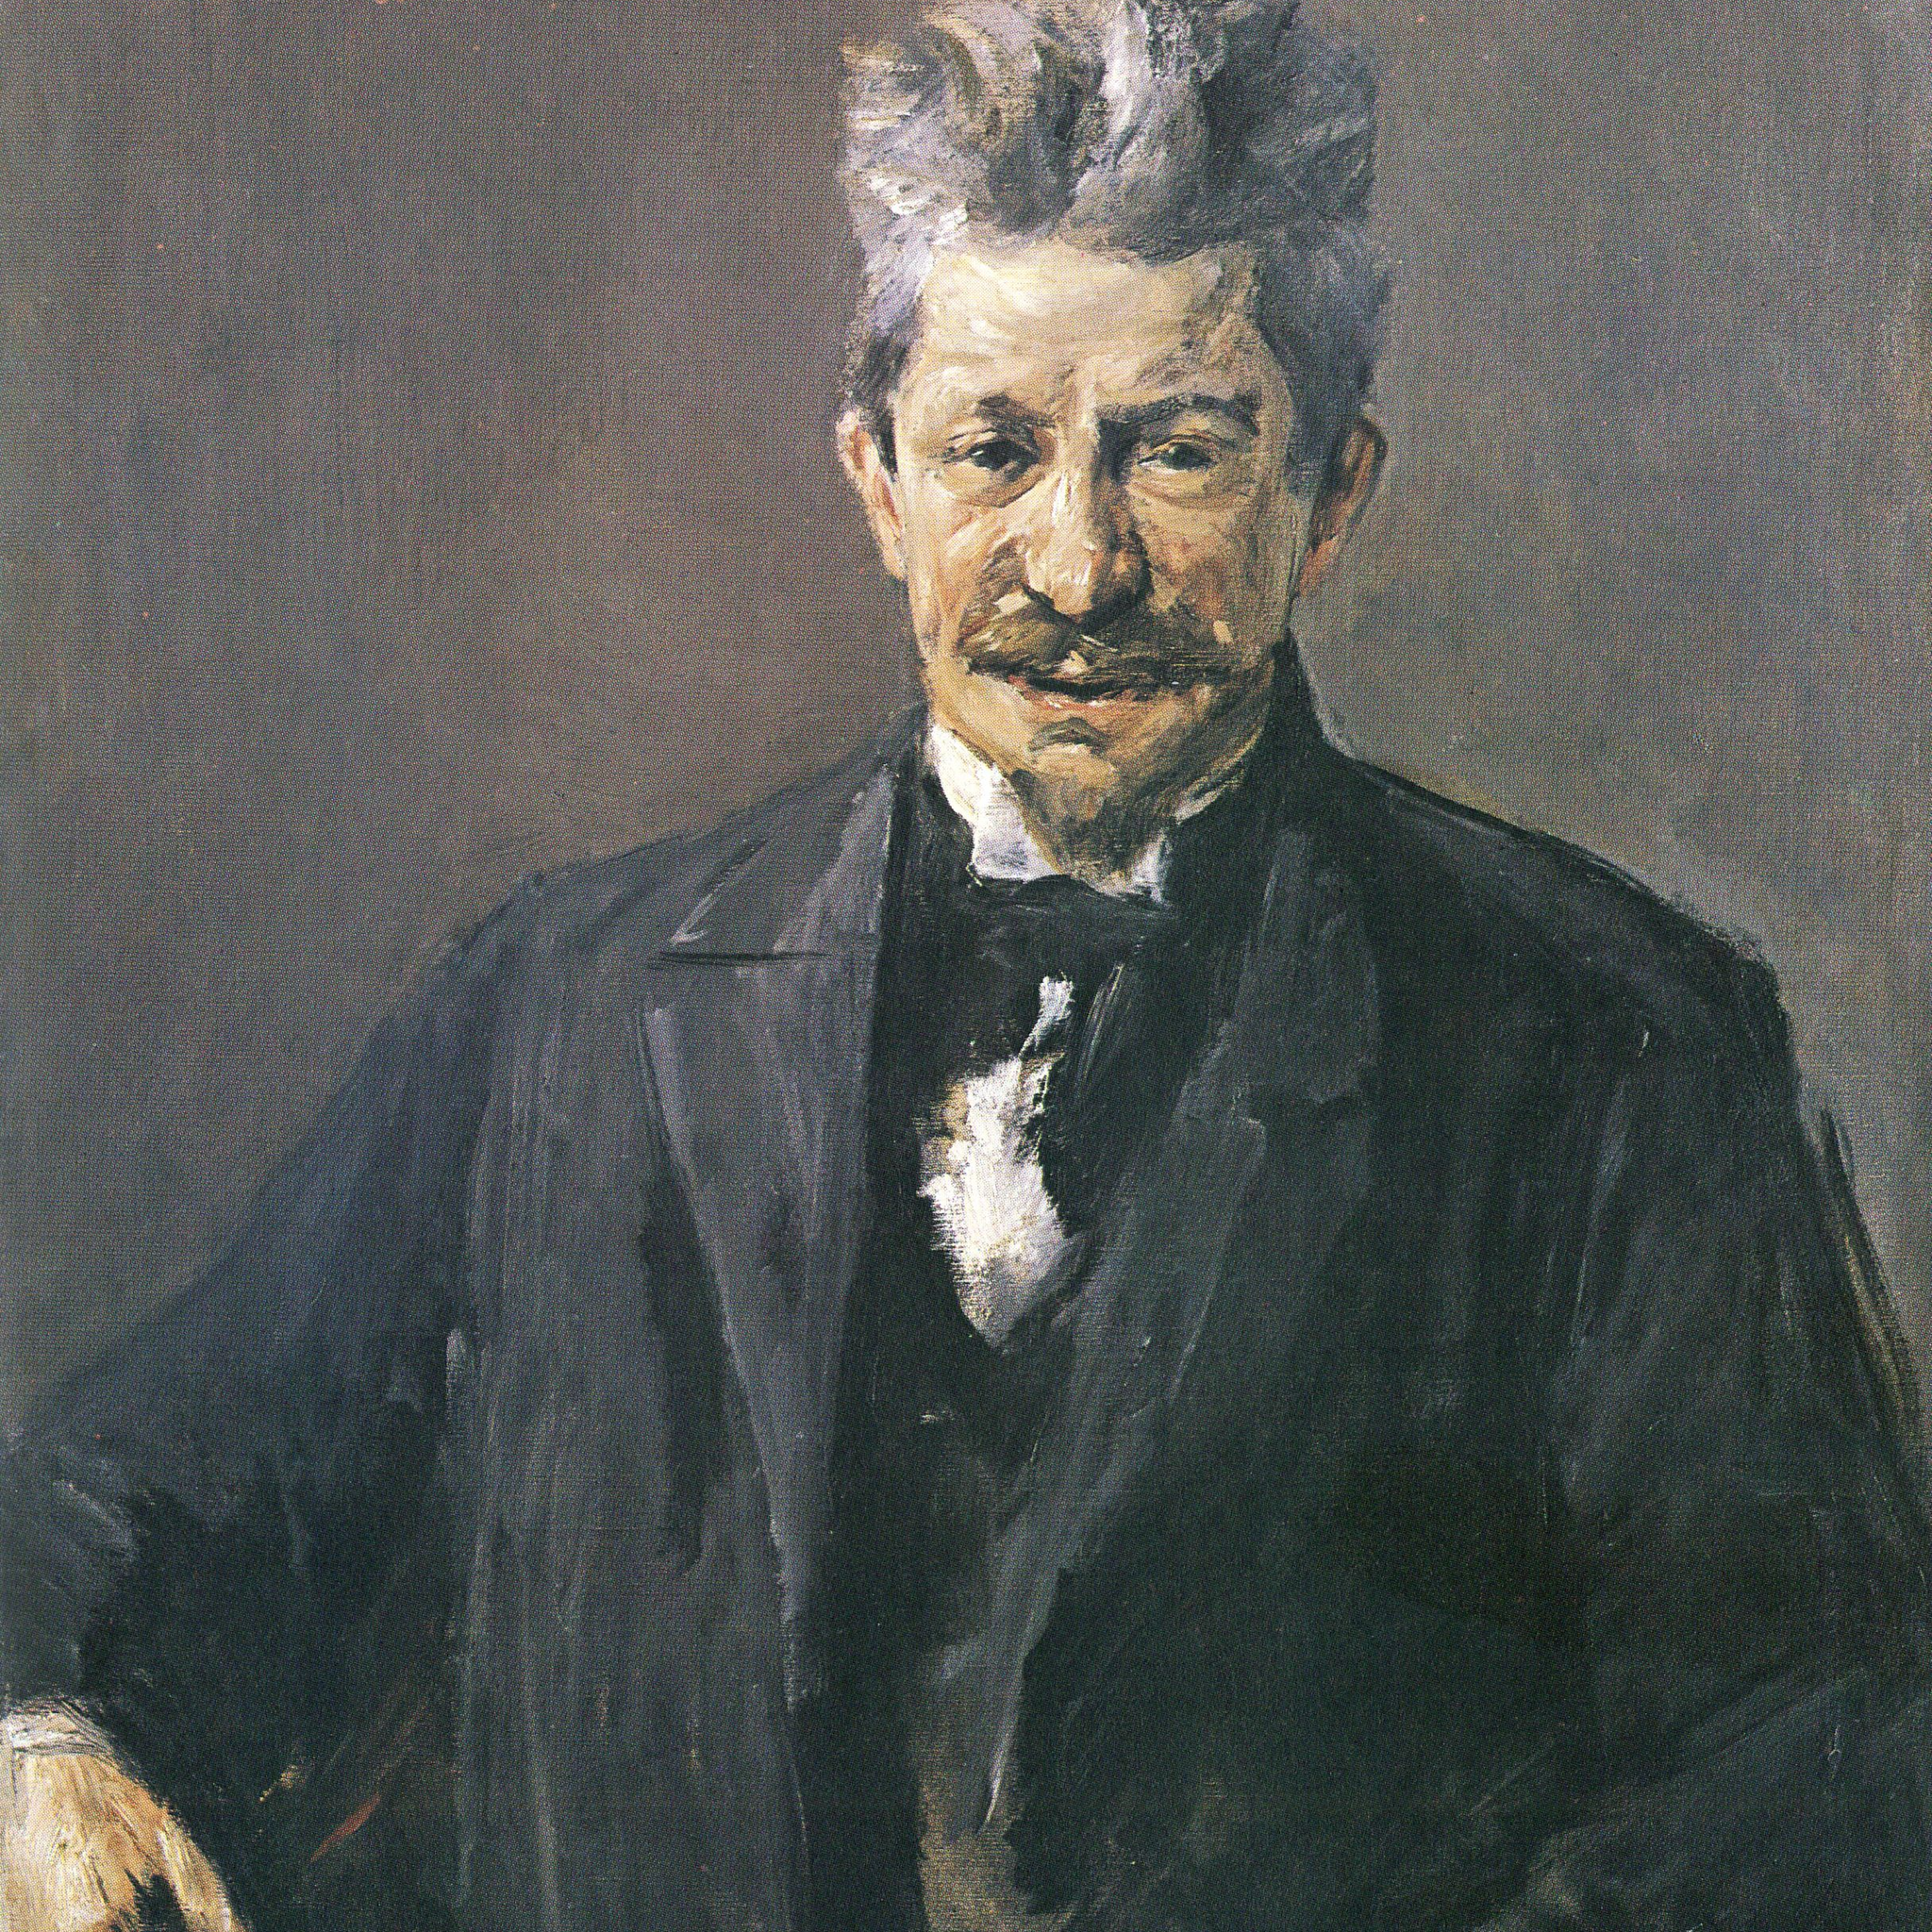 Portrait de Georg Brandes - Max Liebermann